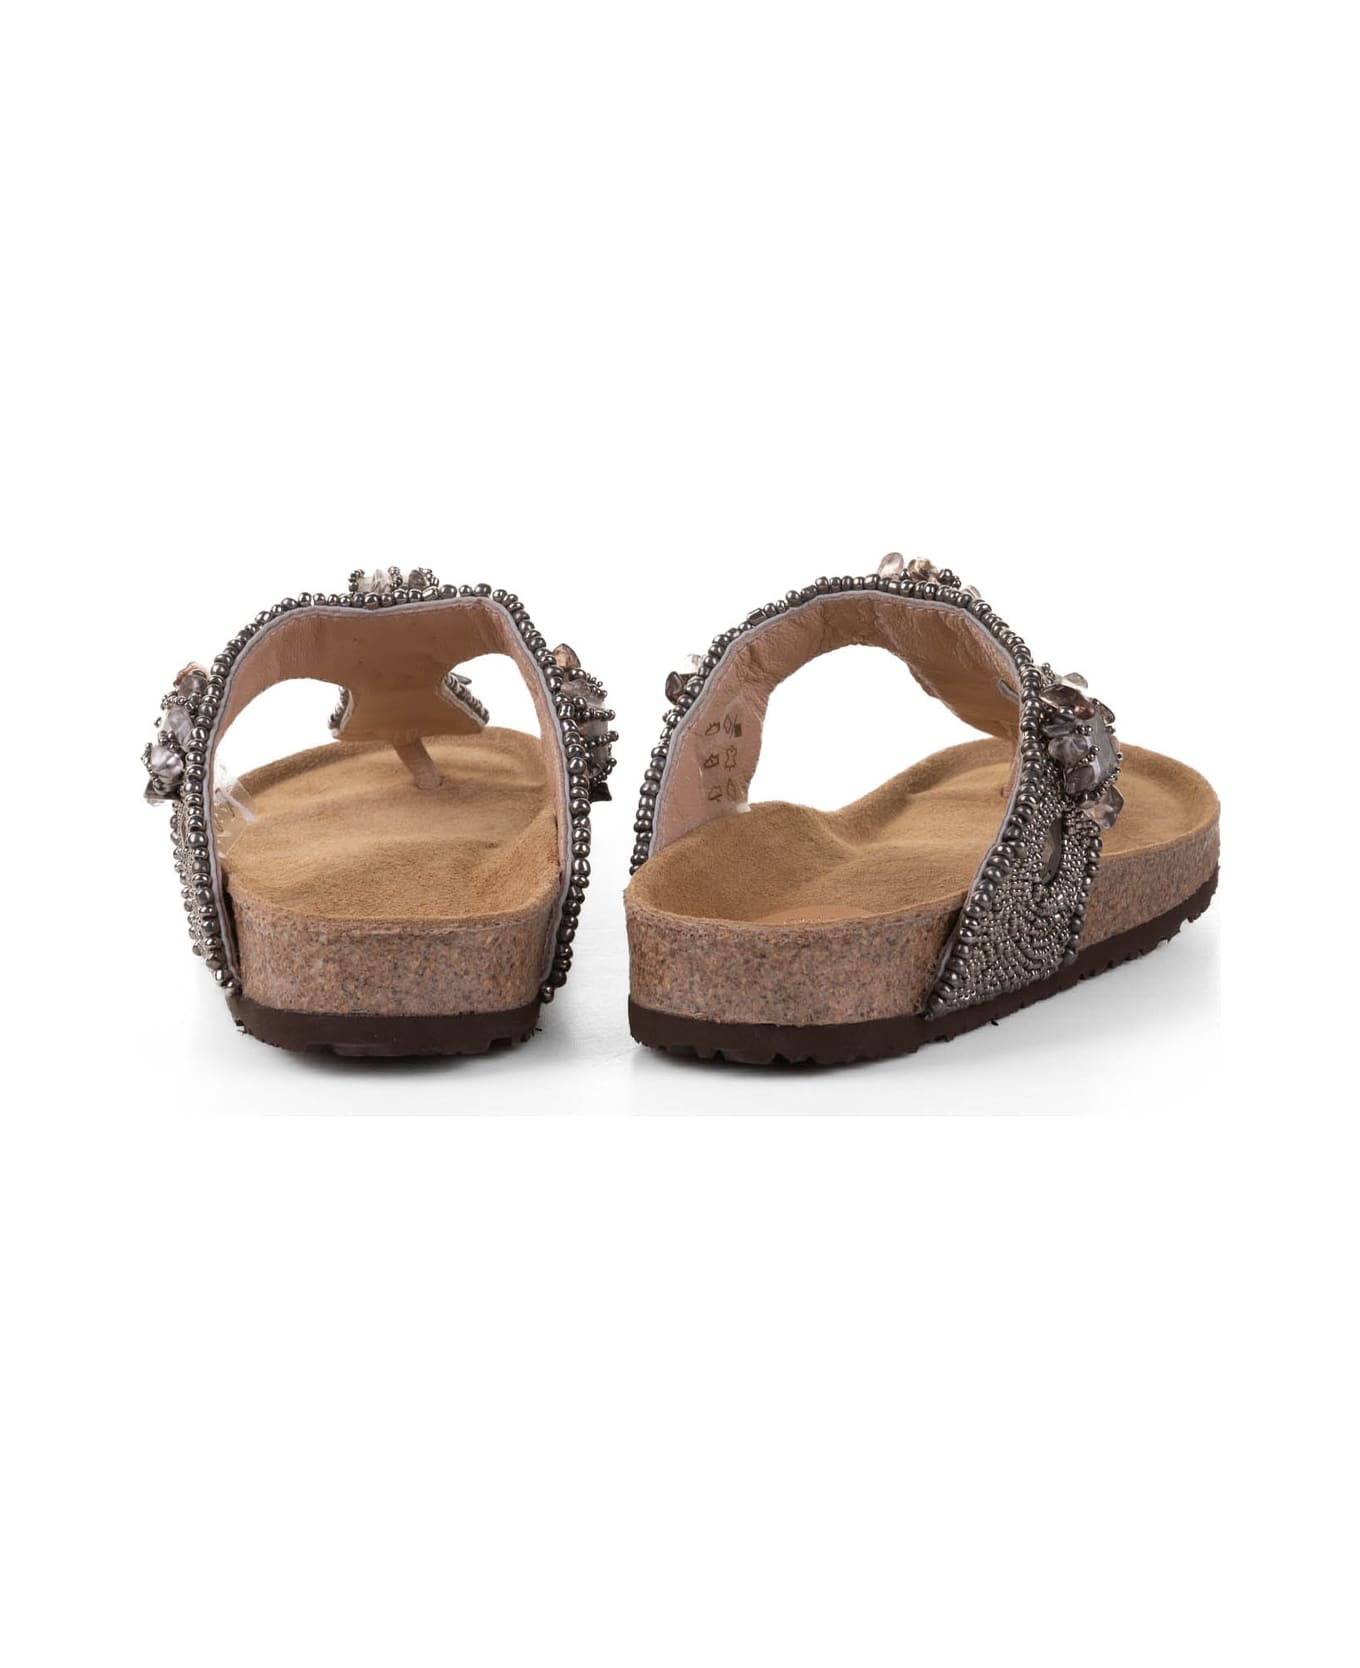 Malìparmi Flip-flop Sandal With Bijoux Embroidery - ARGENTO